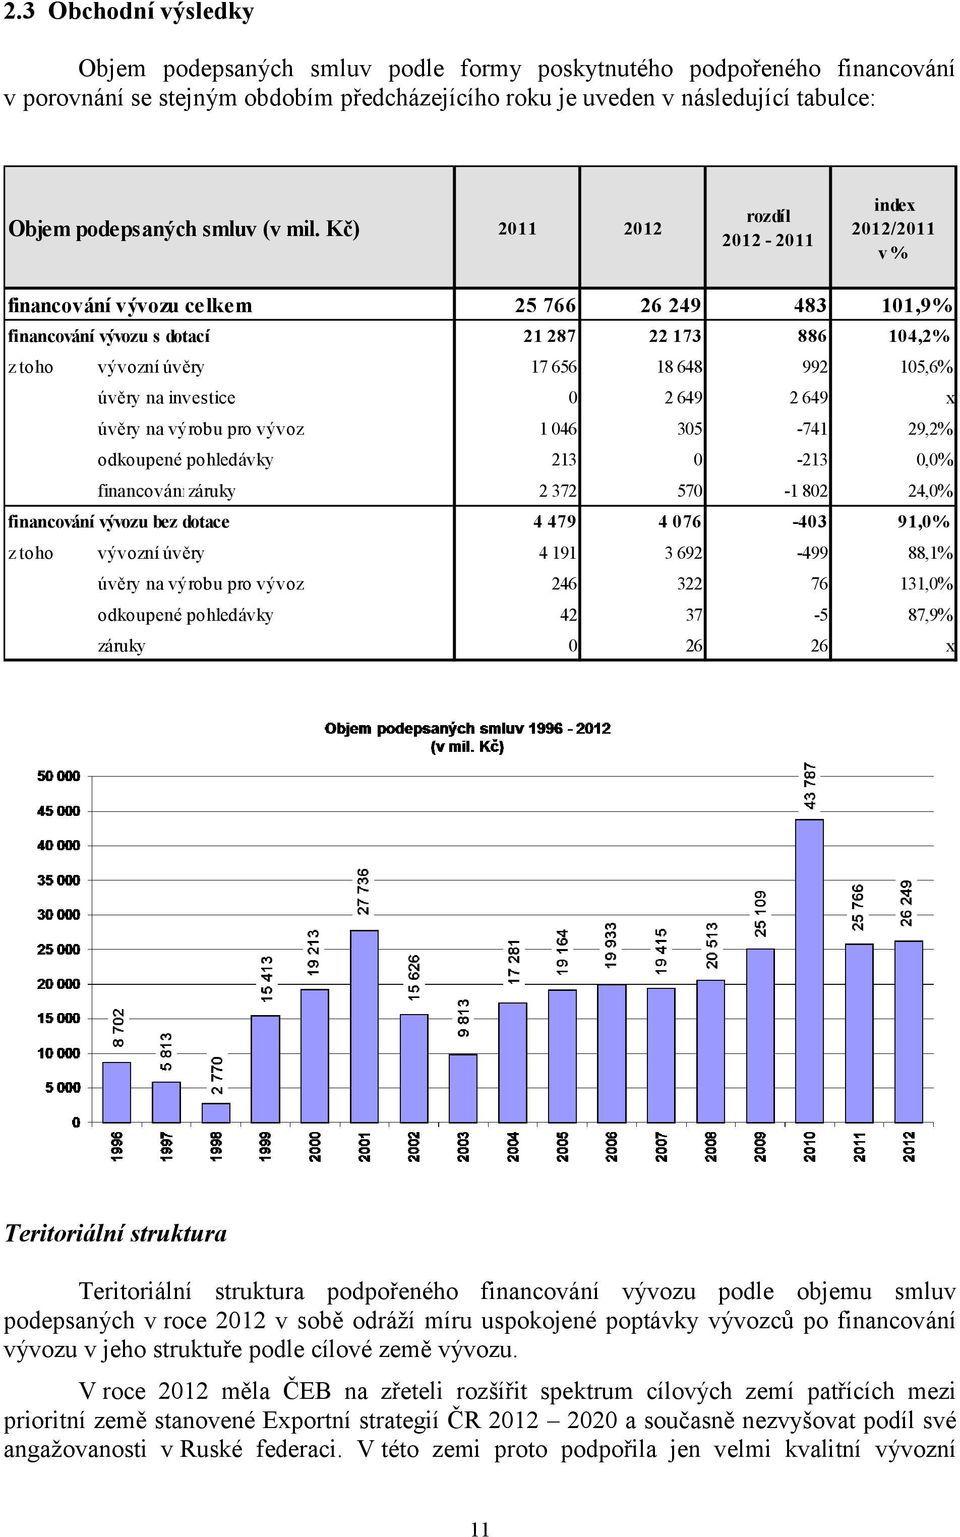 Kč) 2011 2012 rozdíl 2012-2011 index 2012/2011 v % financování vývozu celkem 25 766 26 249 483 101,9% financování vývozu s dotací 21 287 22 173 886 104,2% z toho vývozní úvěry 17 656 18 648 992